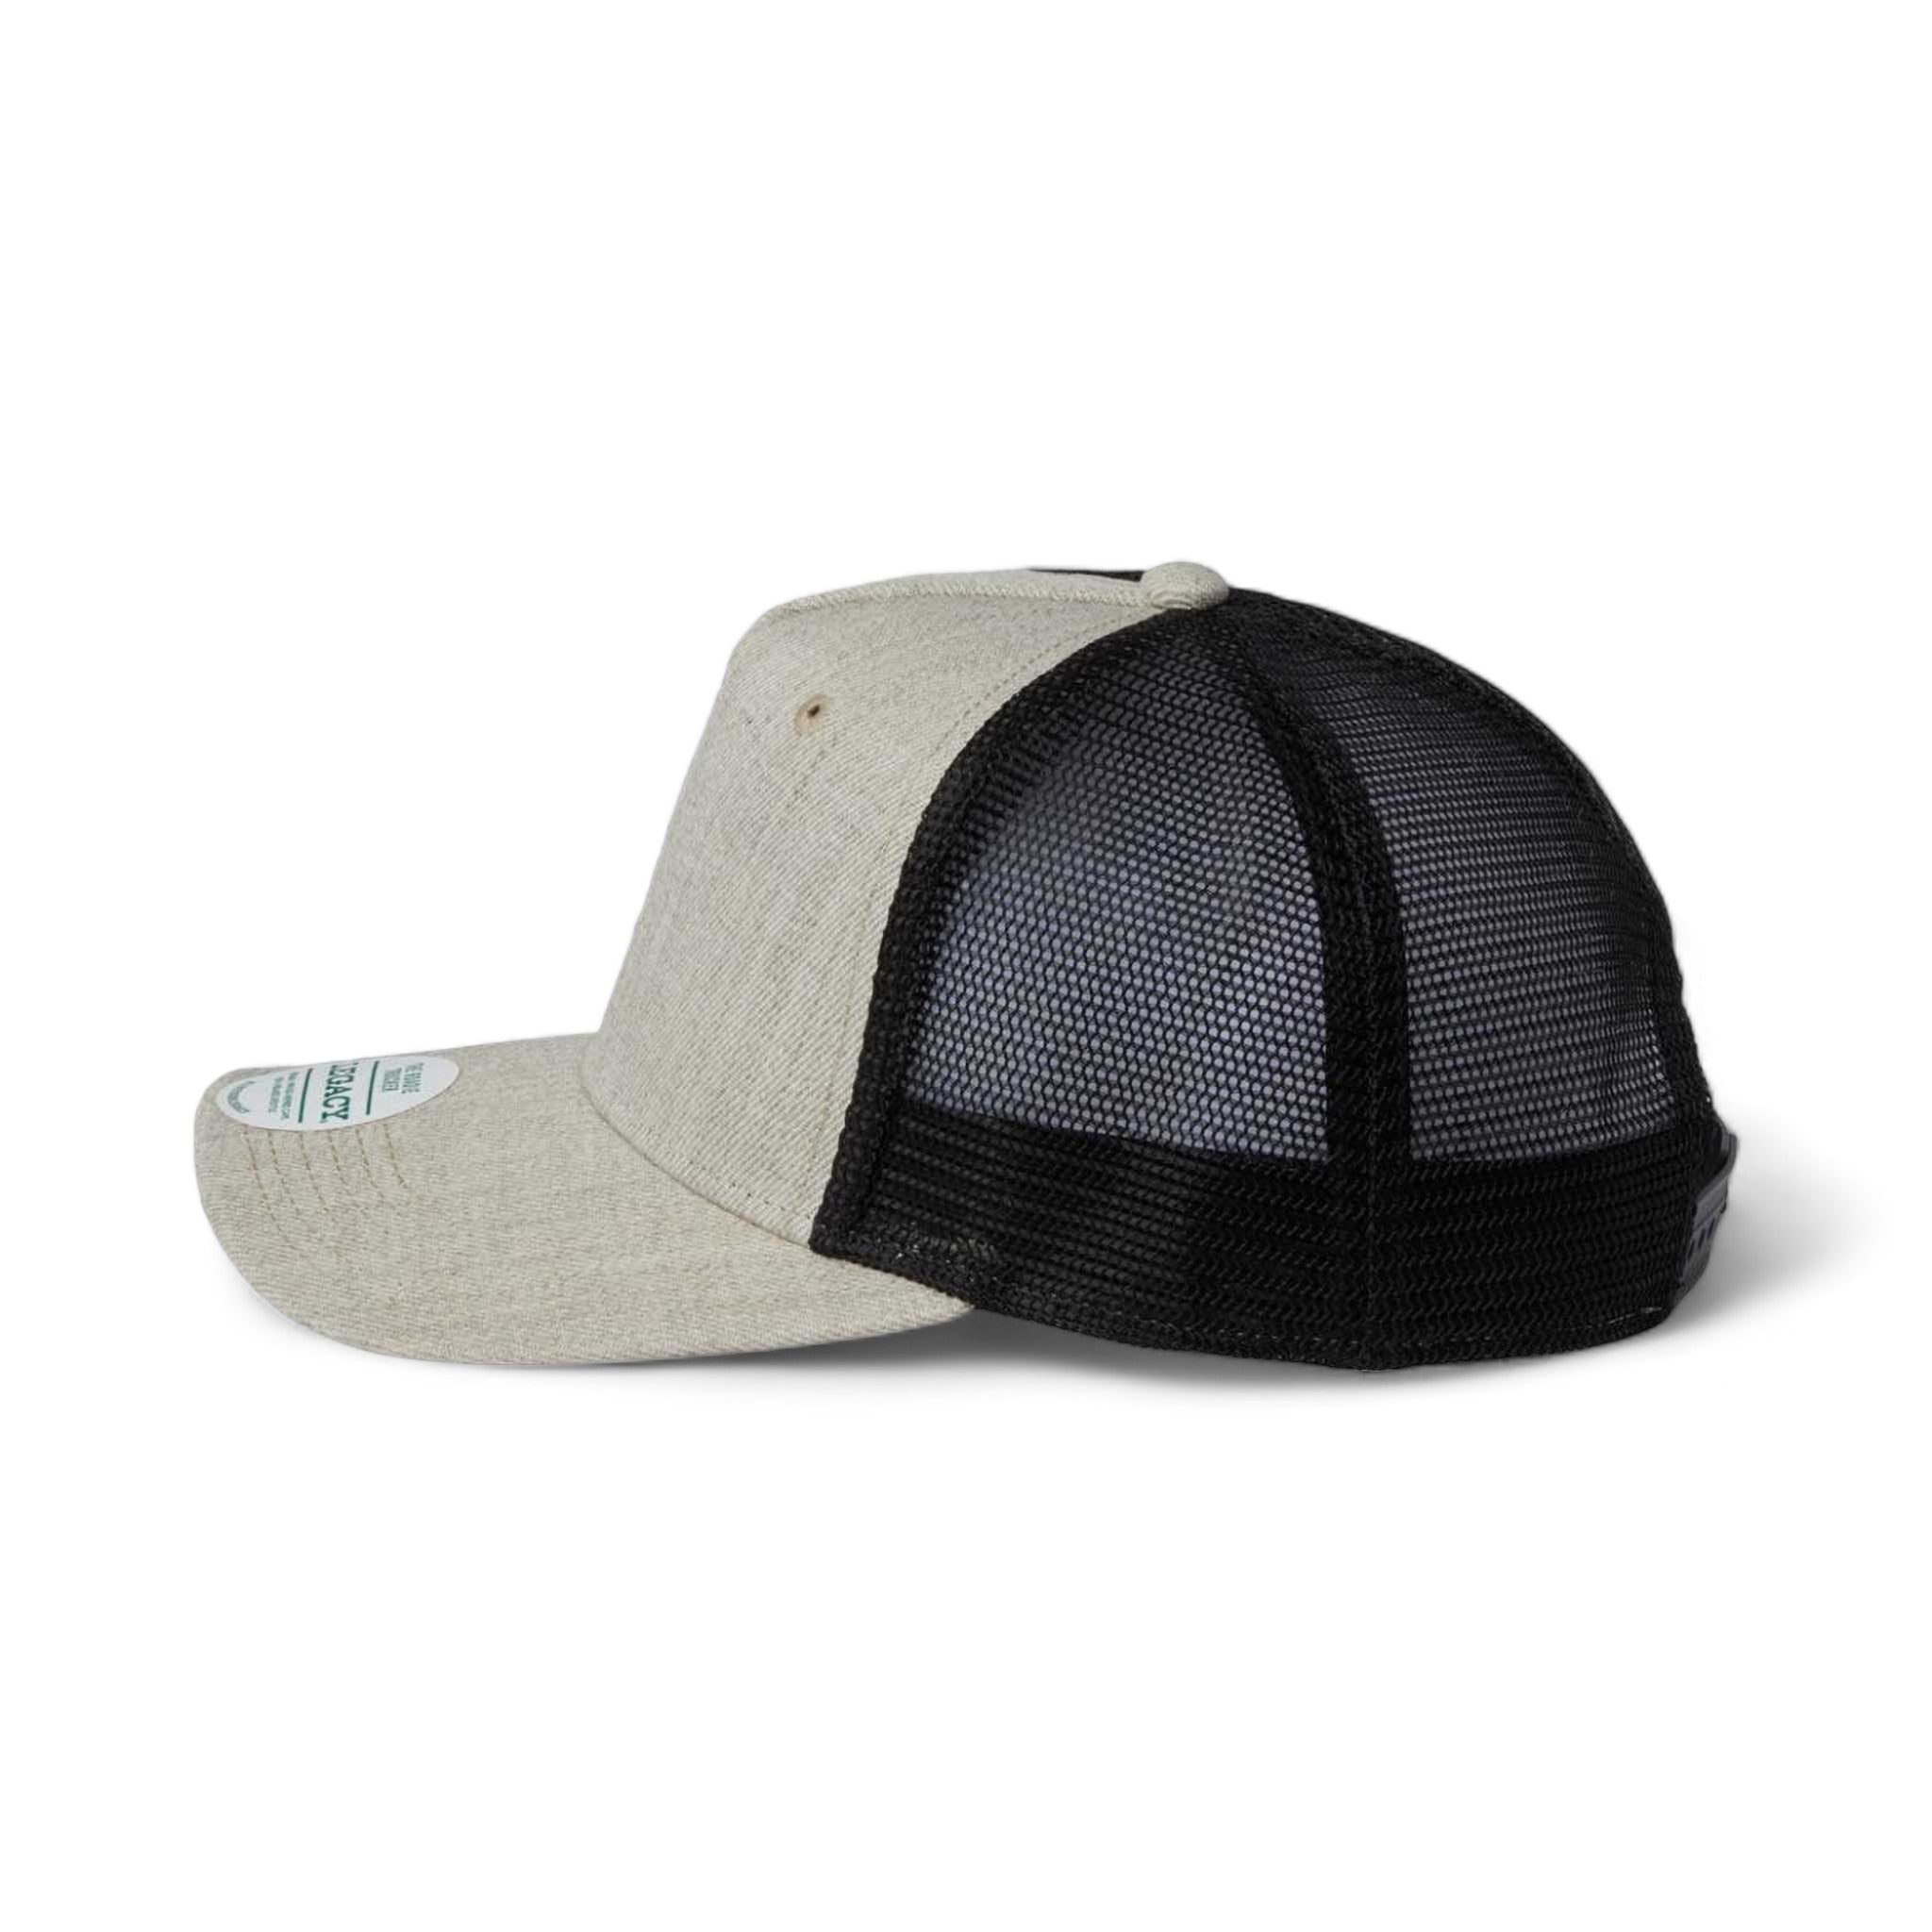 Side view of LEGACY ROADIE custom hat in heather tan and  black